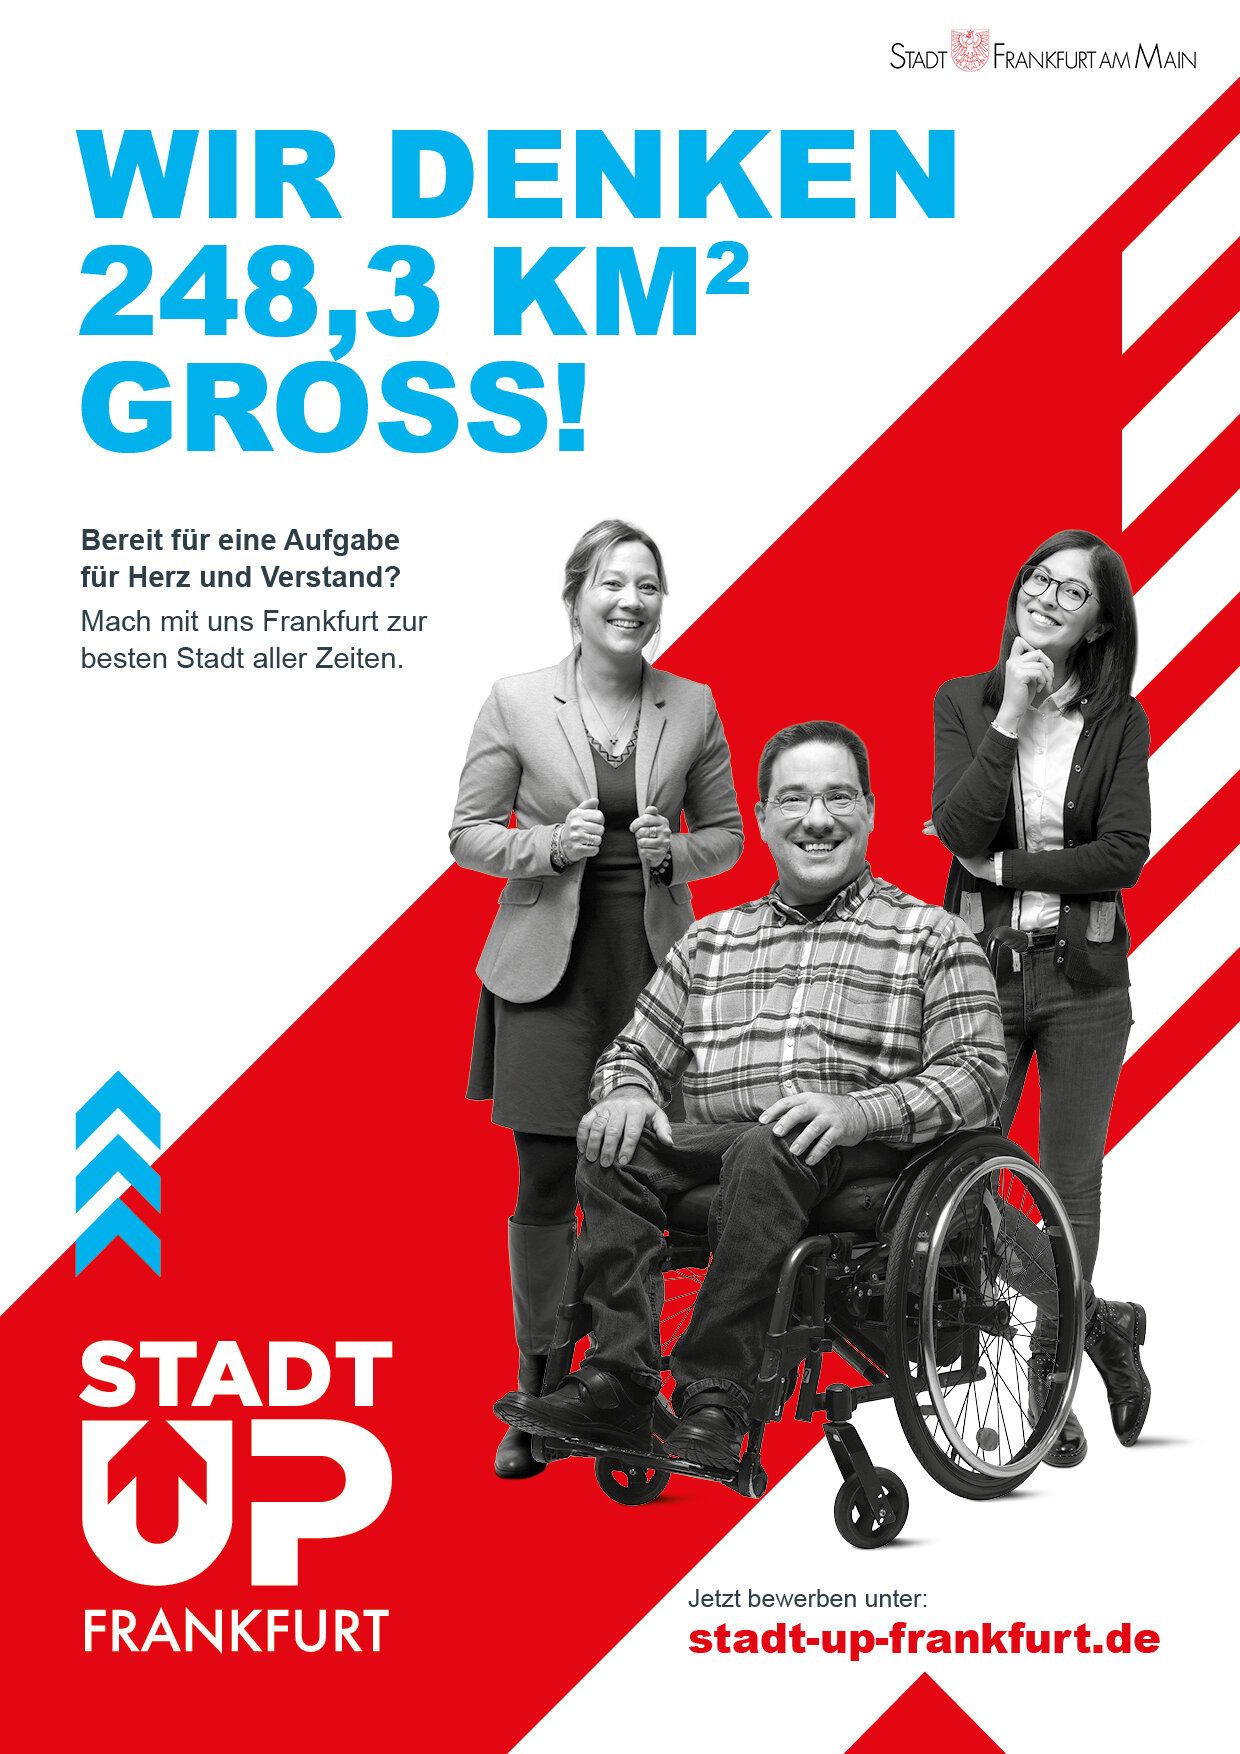 Plakat mit dem Text "Wir denken 248,3 qm gross!" und drei Mitarbeitern der Stadt Frankfurt